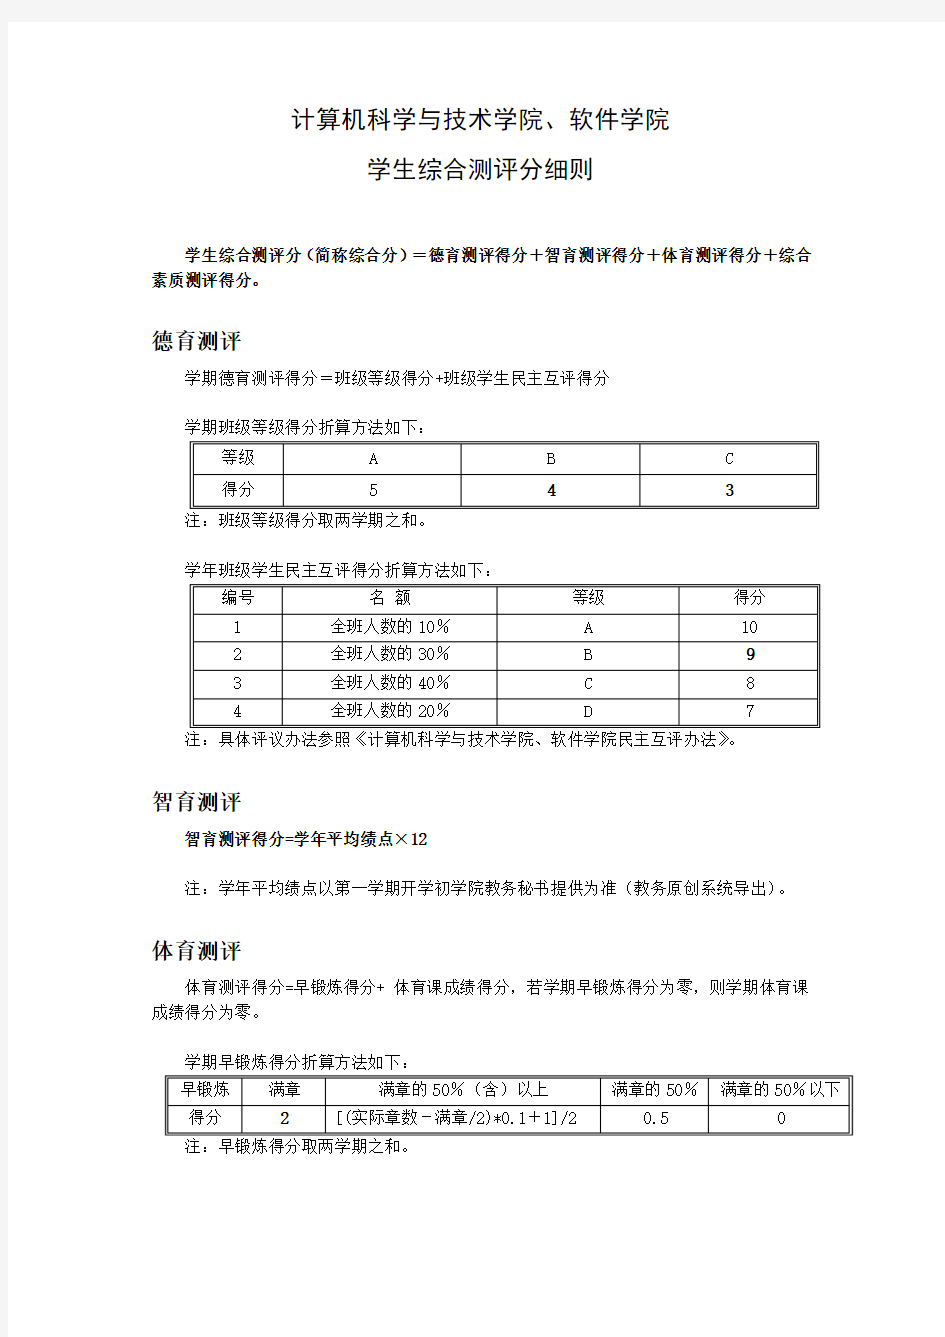 浙江工业大学学生综合测评分细则